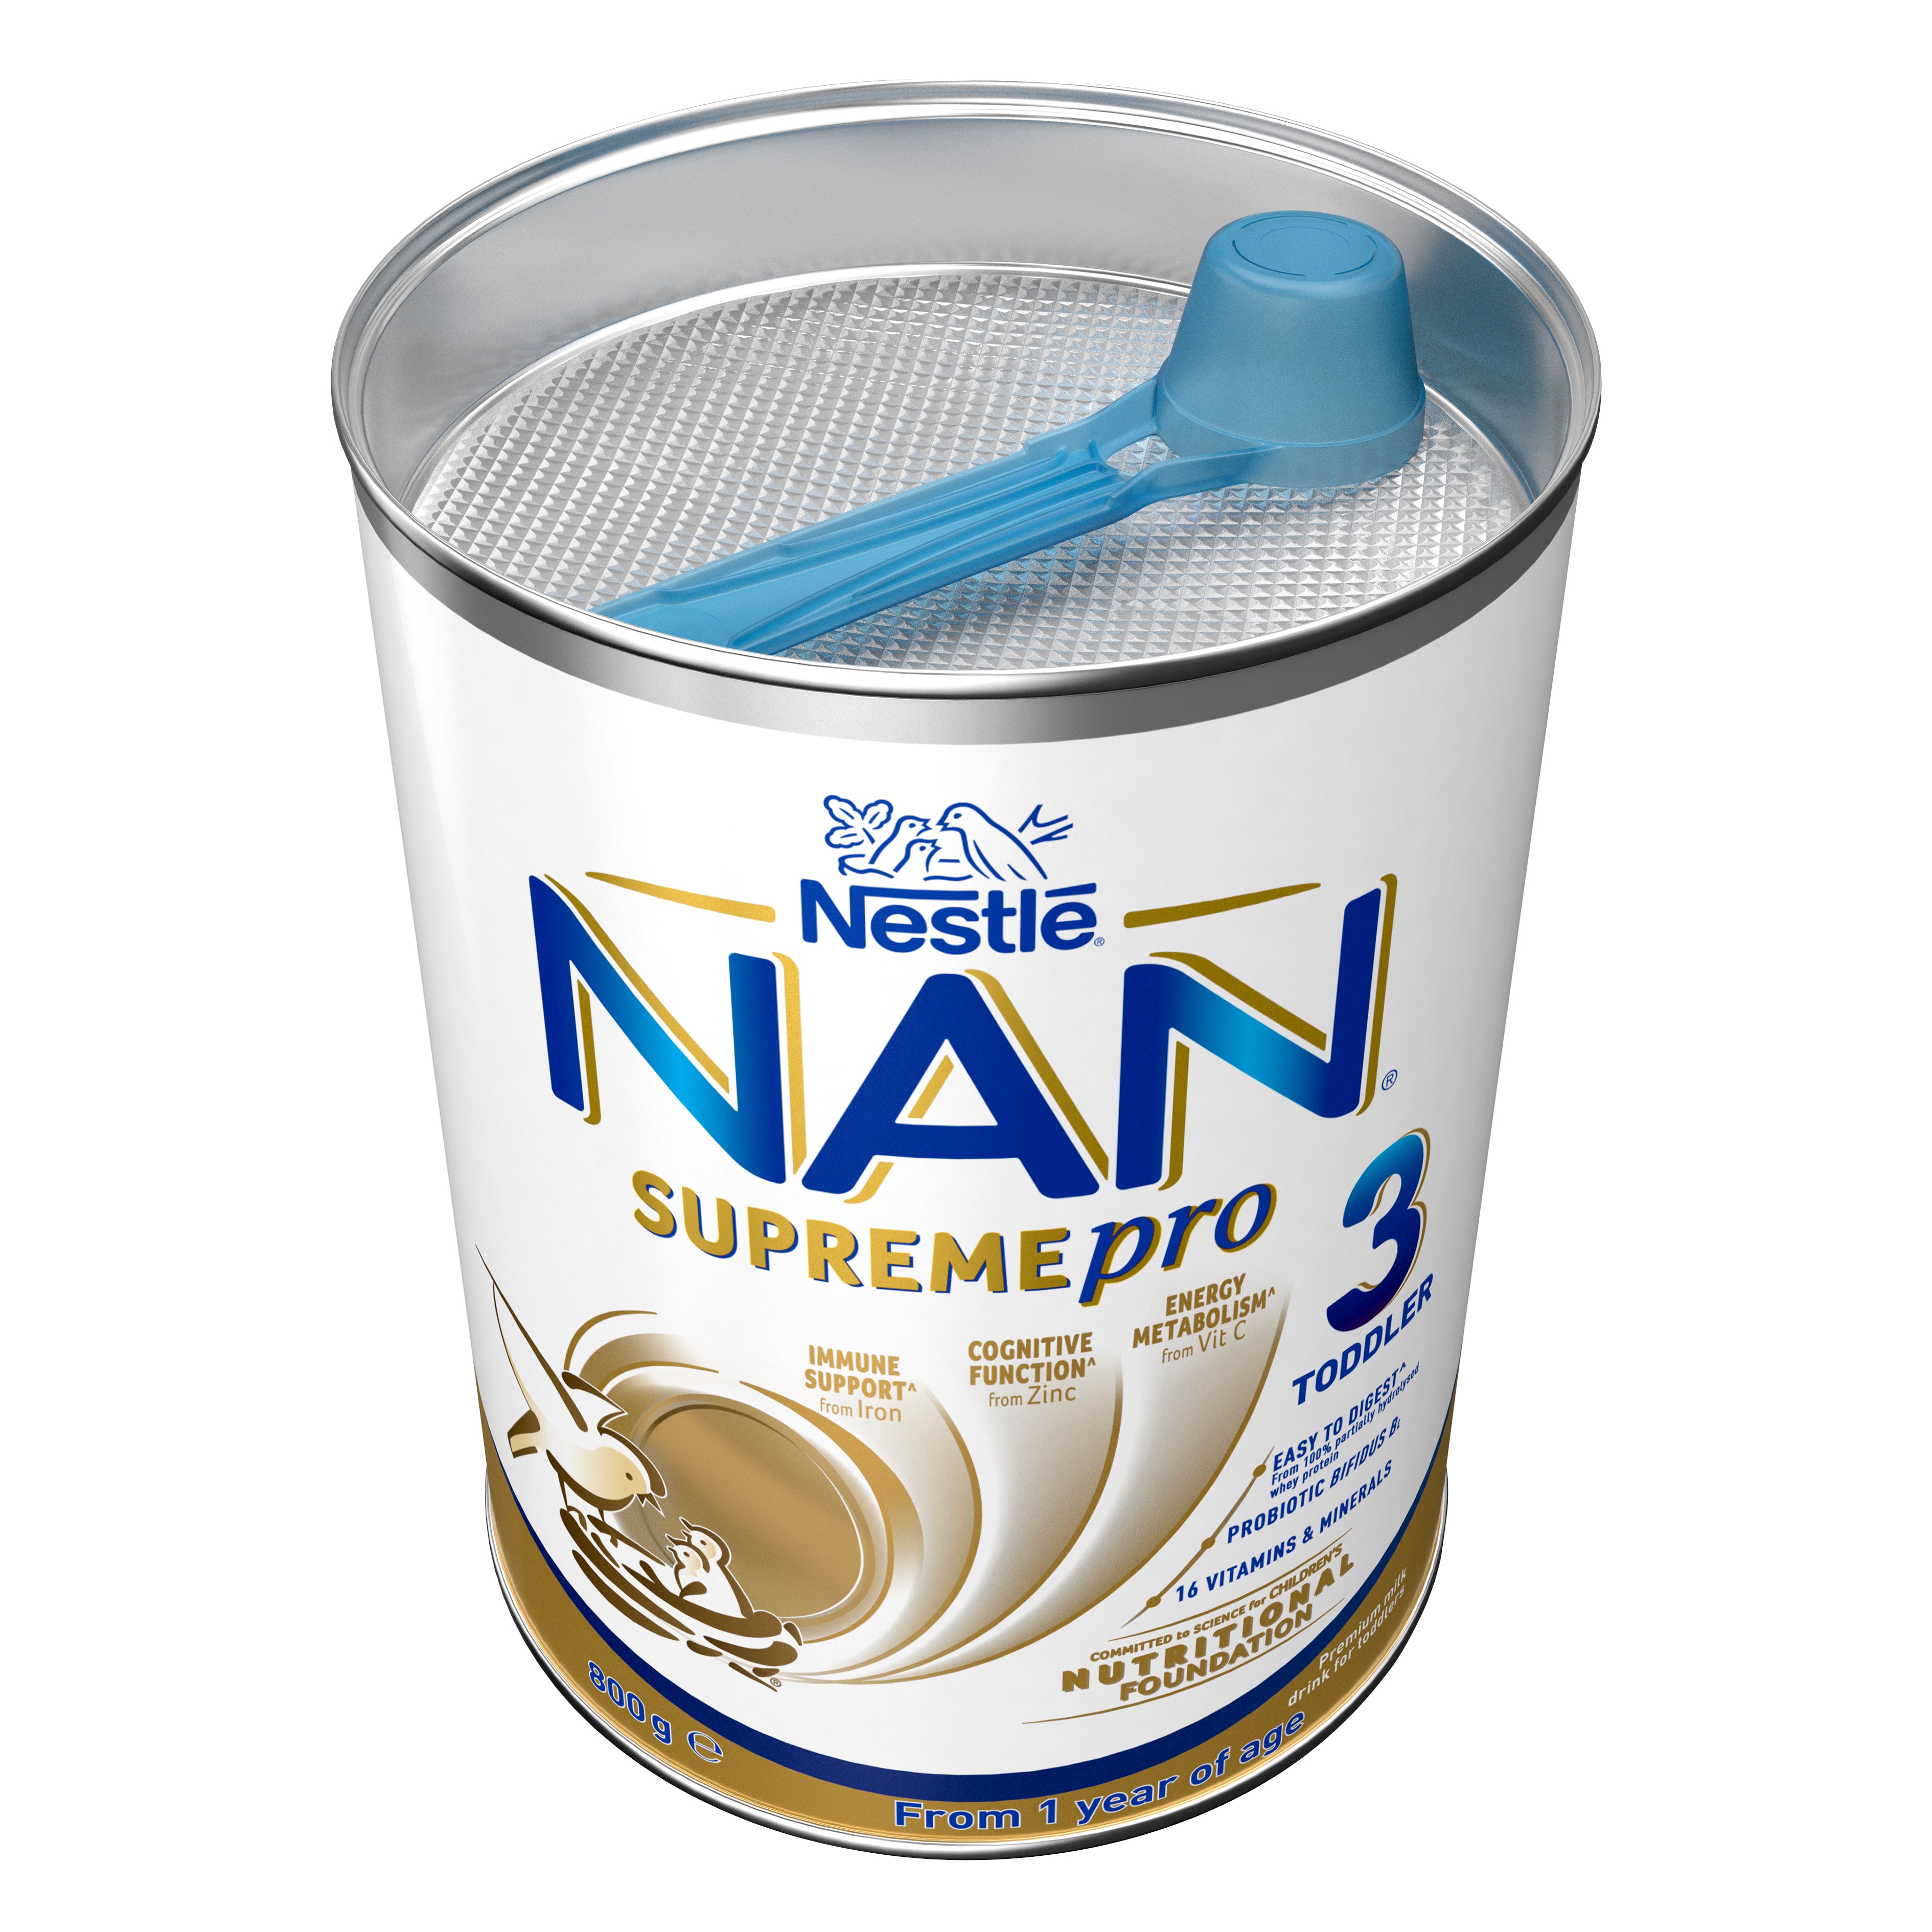 NAN SUPREMEpro 3 (800g), Toddler Milk Drink